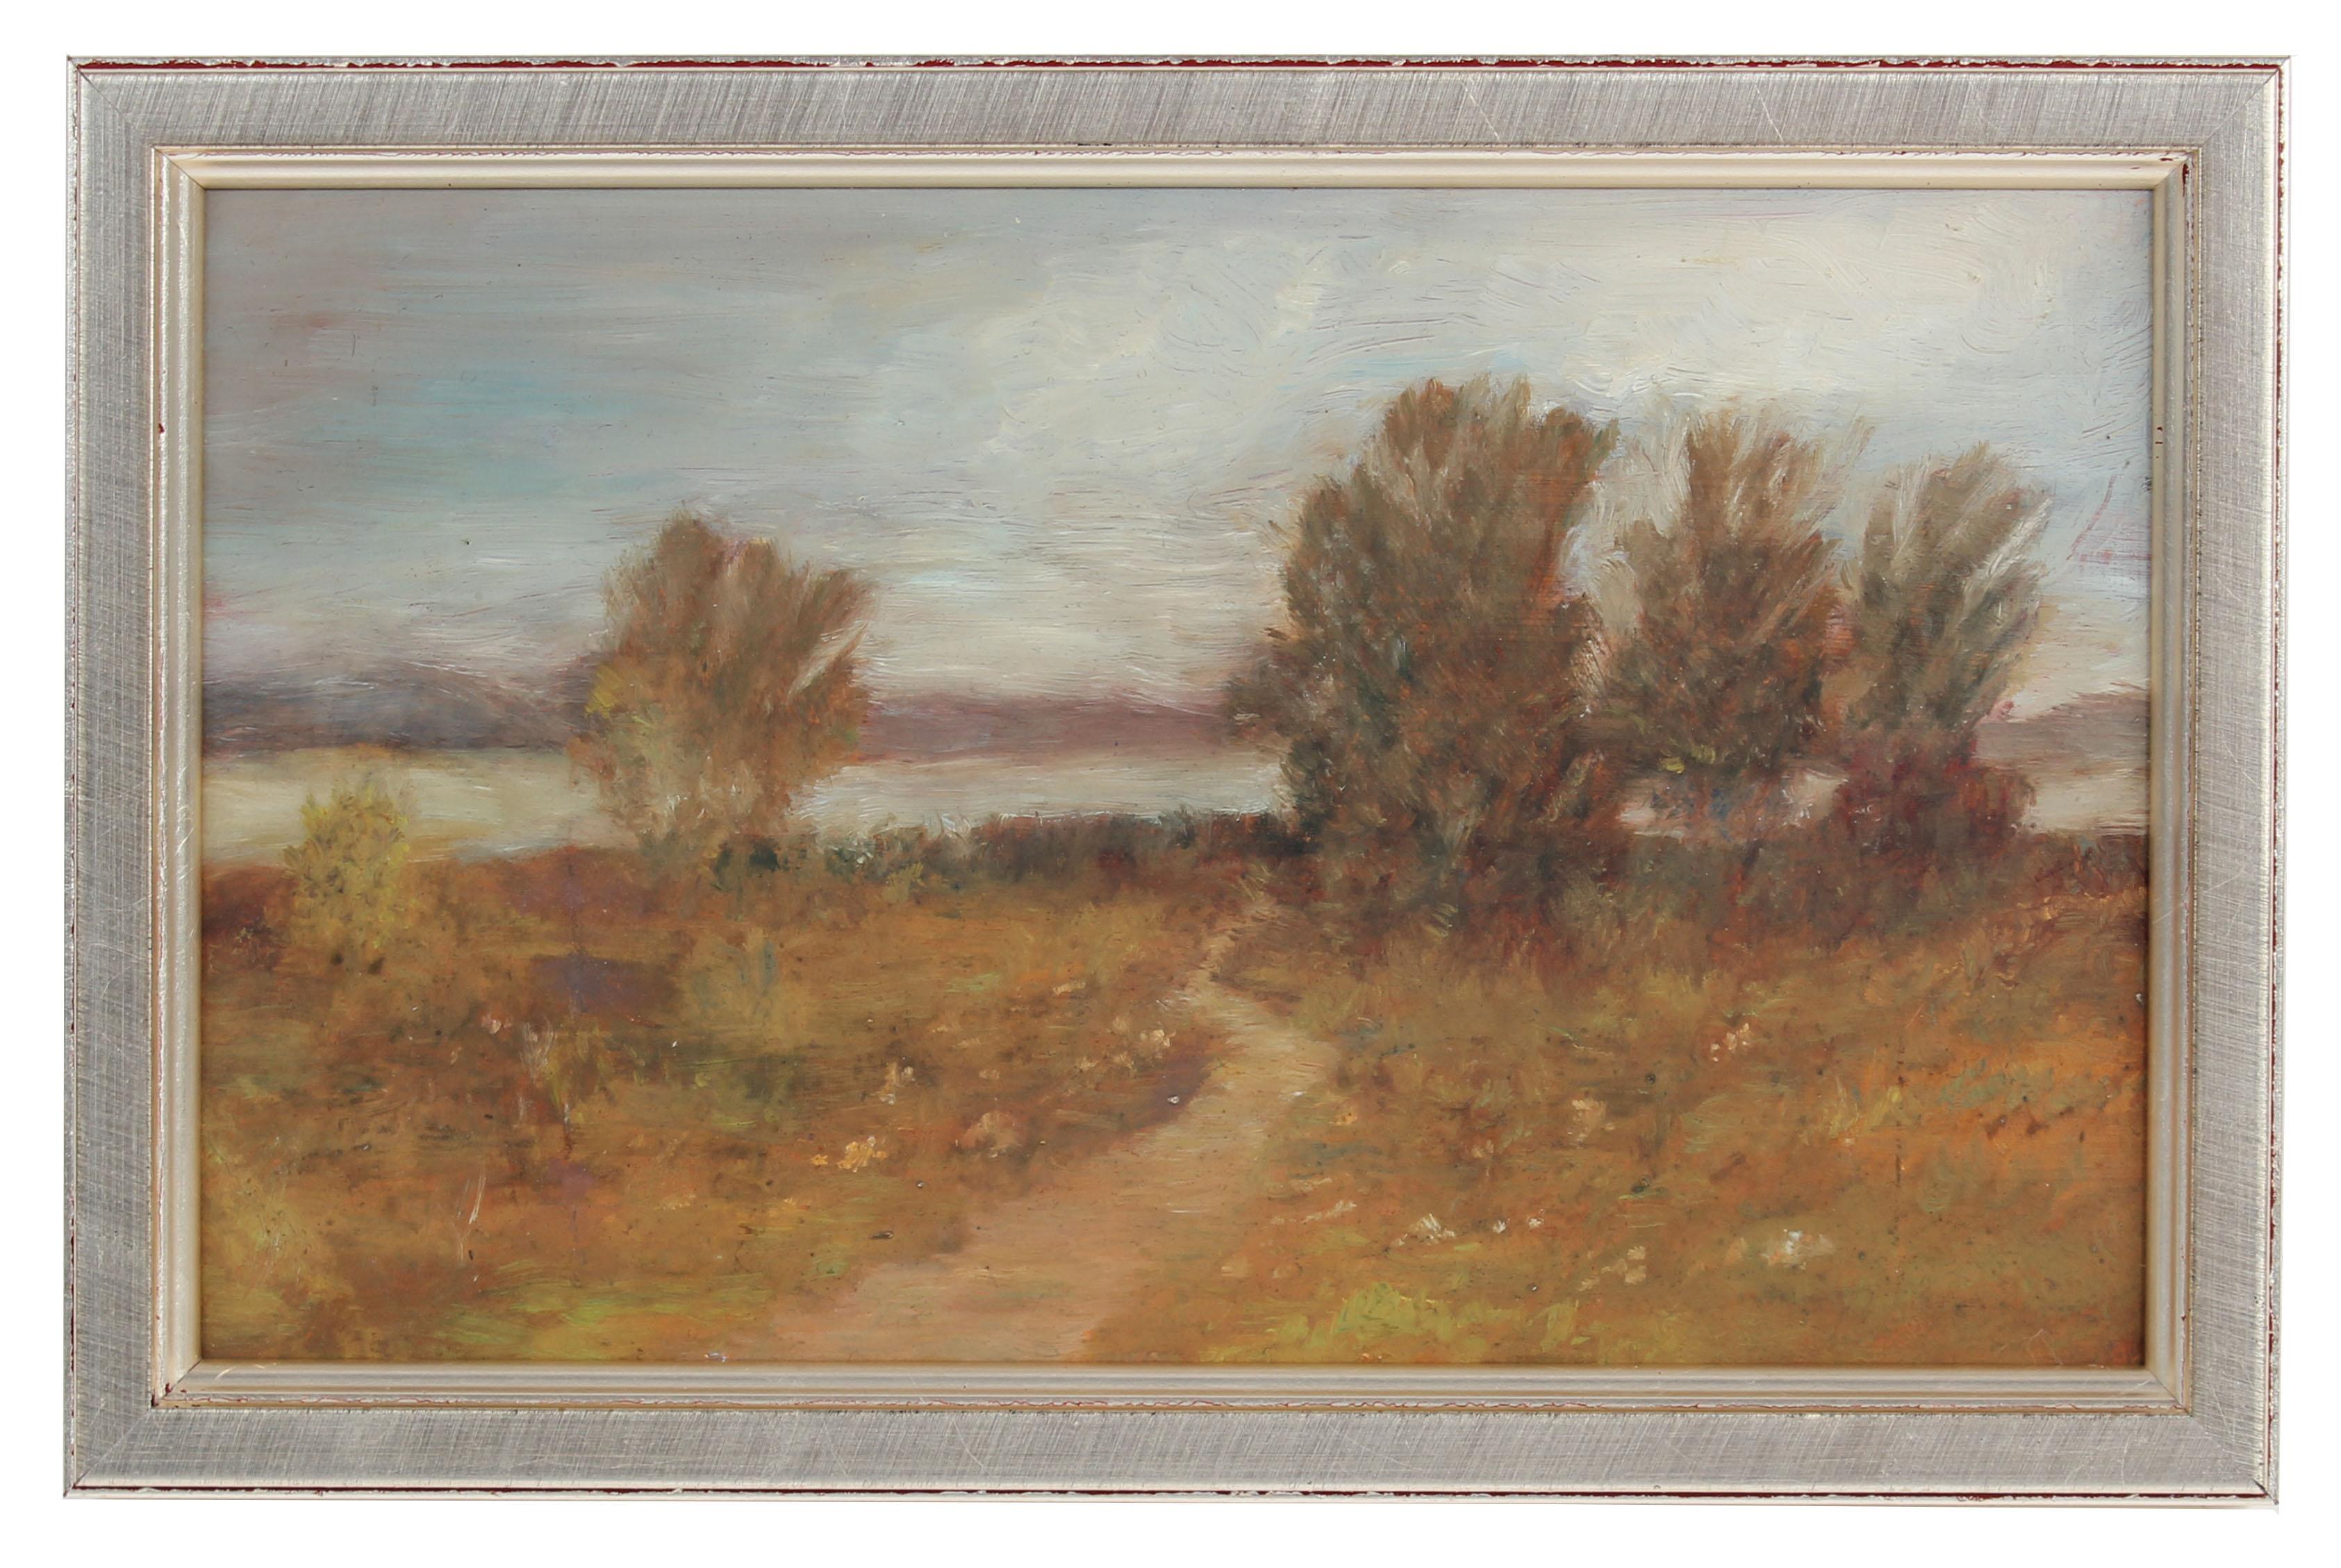 Duncan Davidson Landscape Painting - Petite Impressionist Landscape, Oil Painting, Circa 1900-1930s